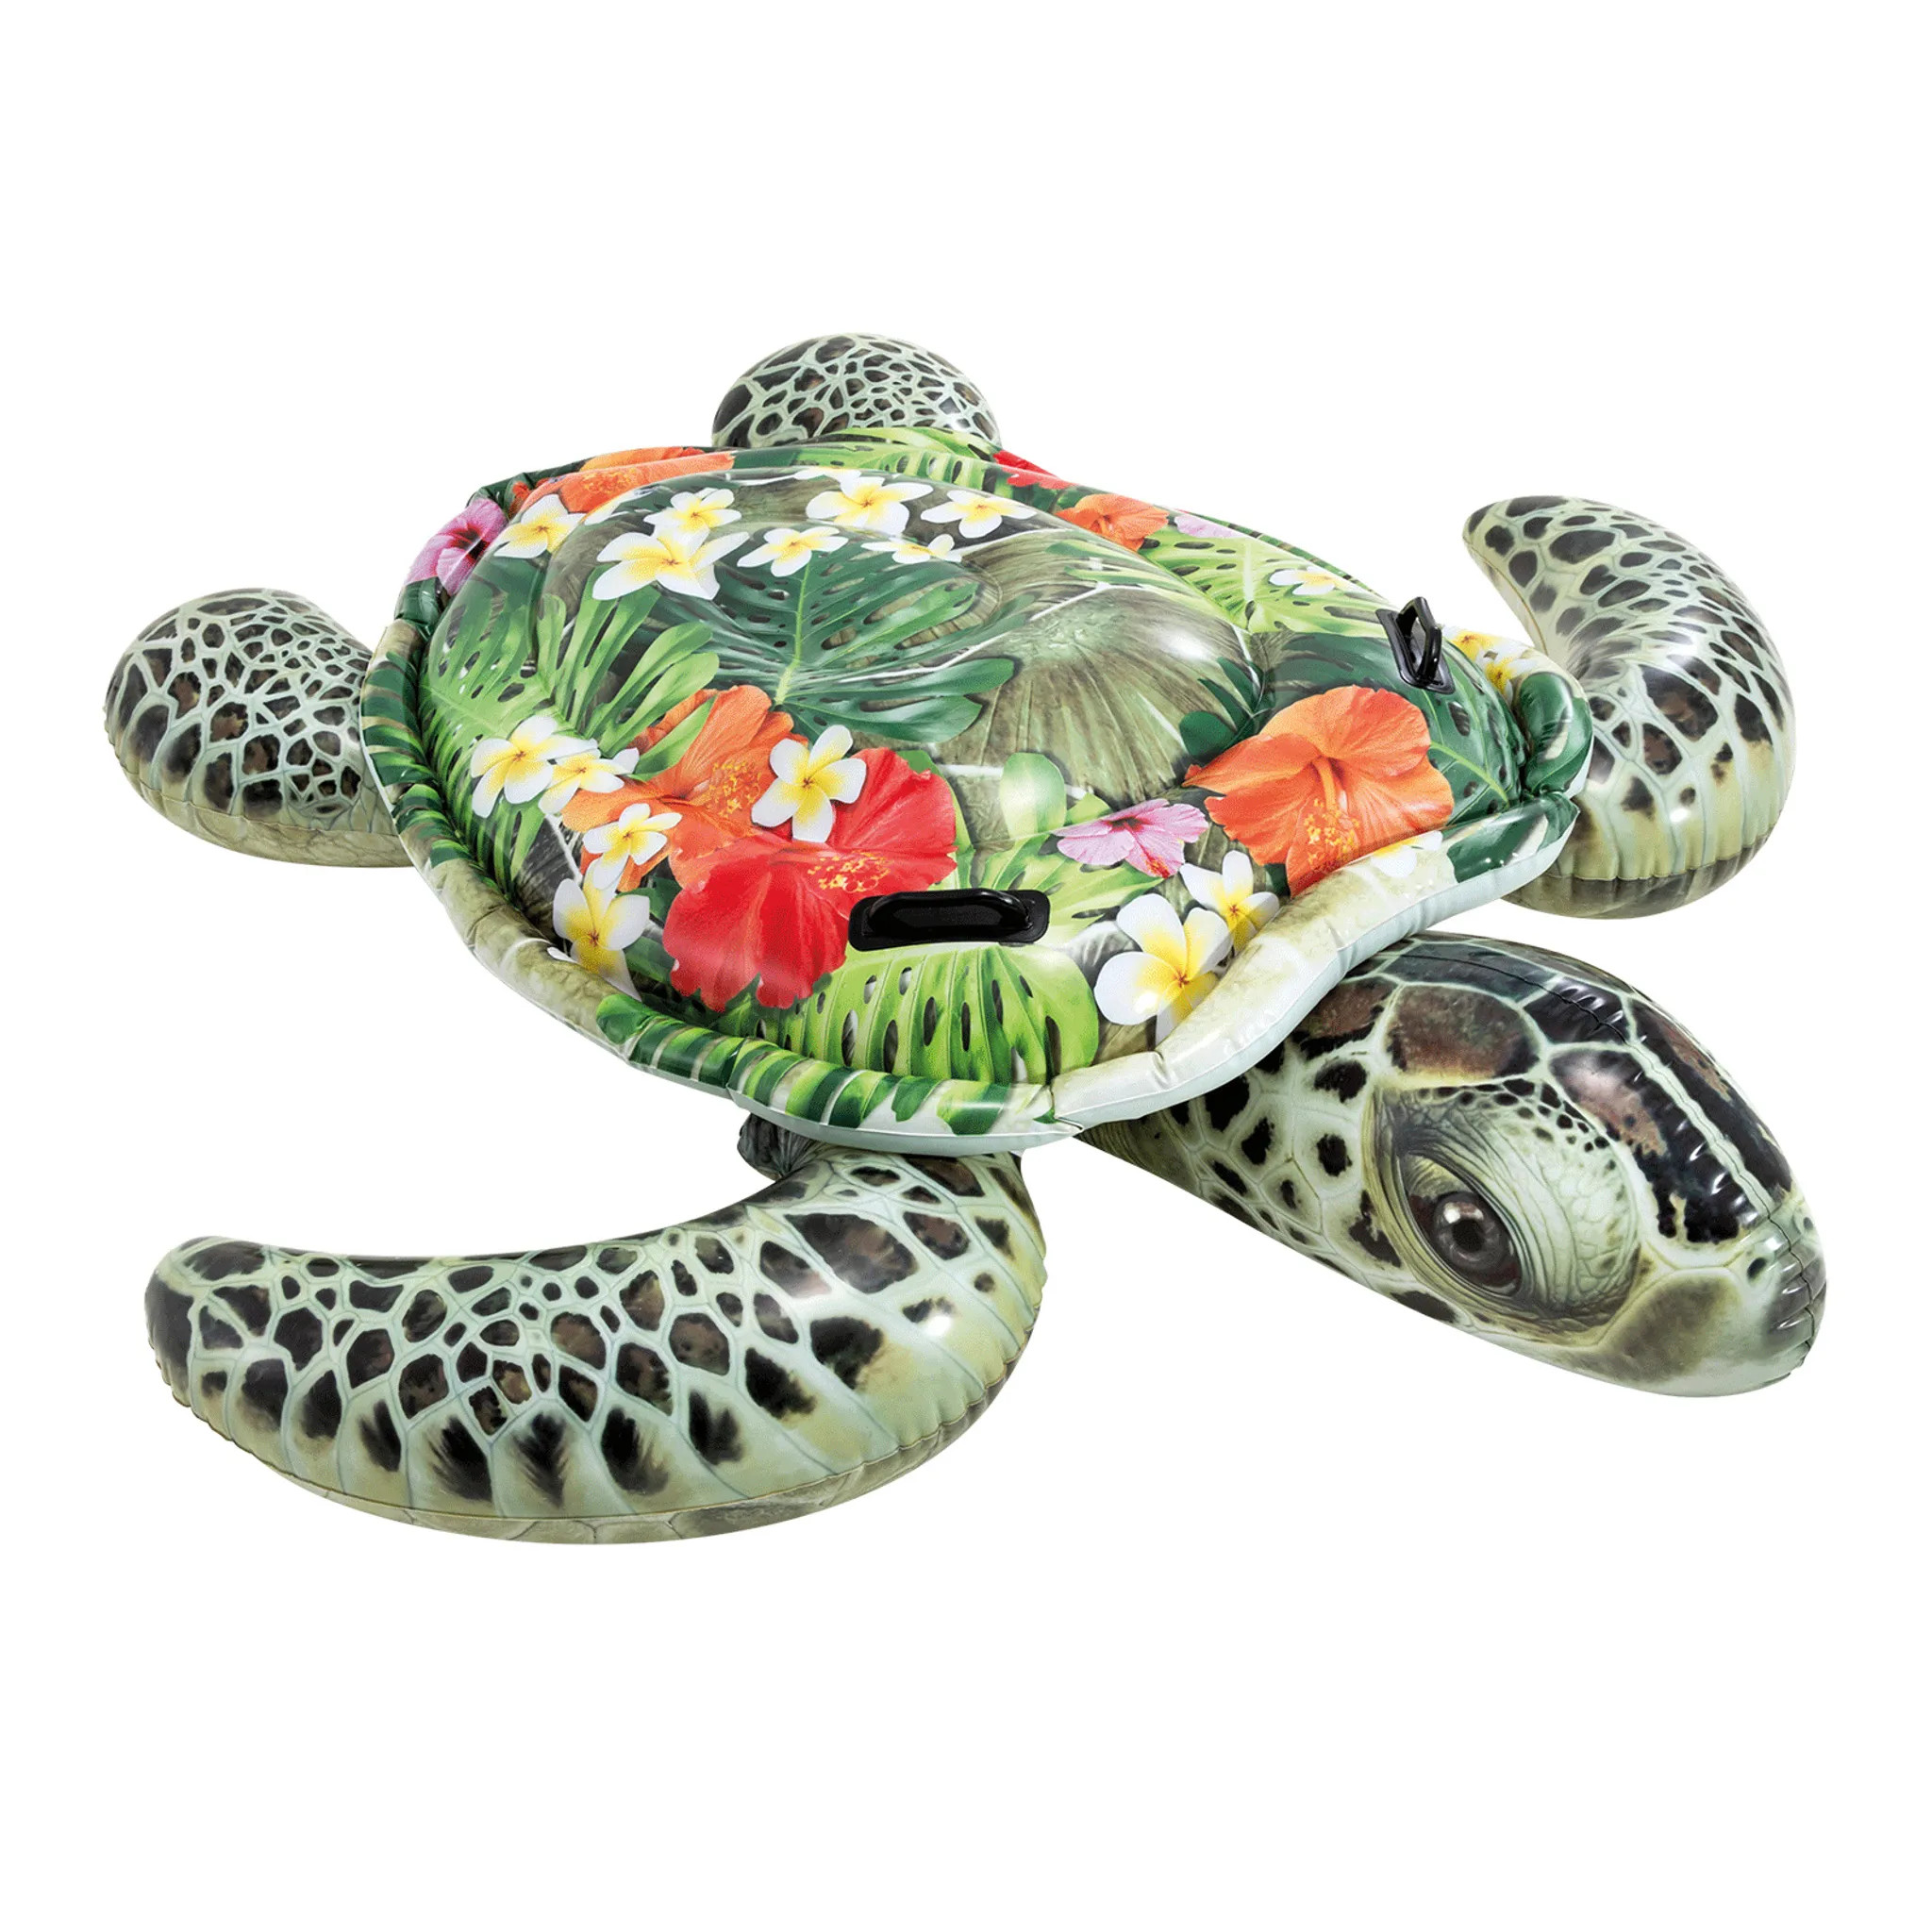 INTEX 57555NP Meeresschildkröte (191x170cm) Wasserspielzeug, mehrfarbig